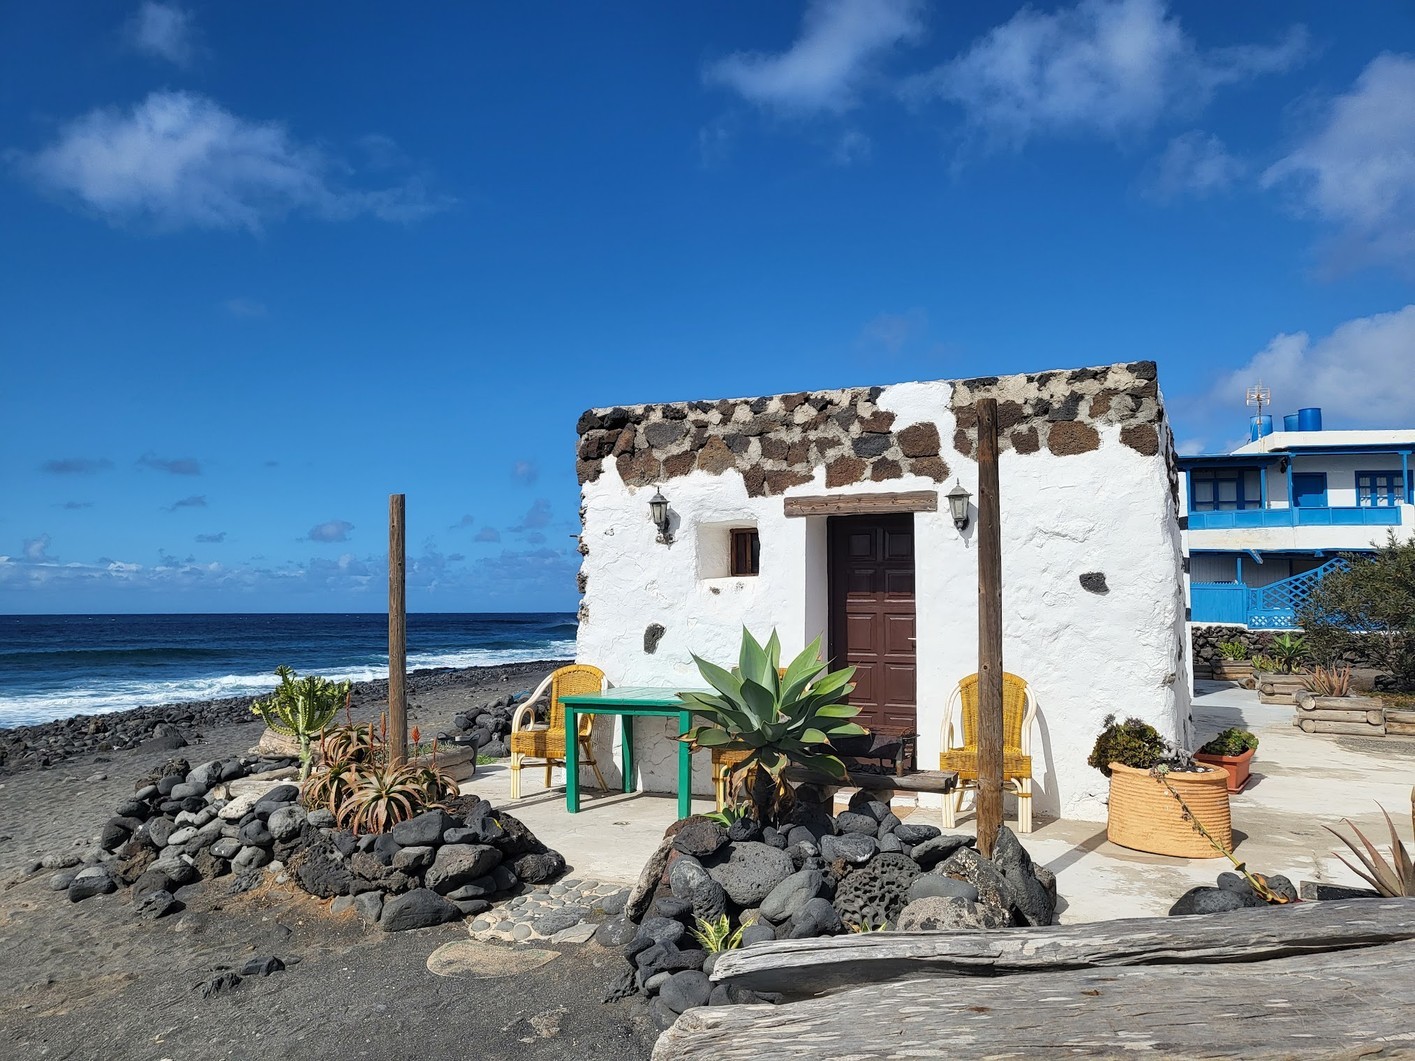 El Golfo, un pequeño pueblo que ver desde Yaiza, Lanzarote